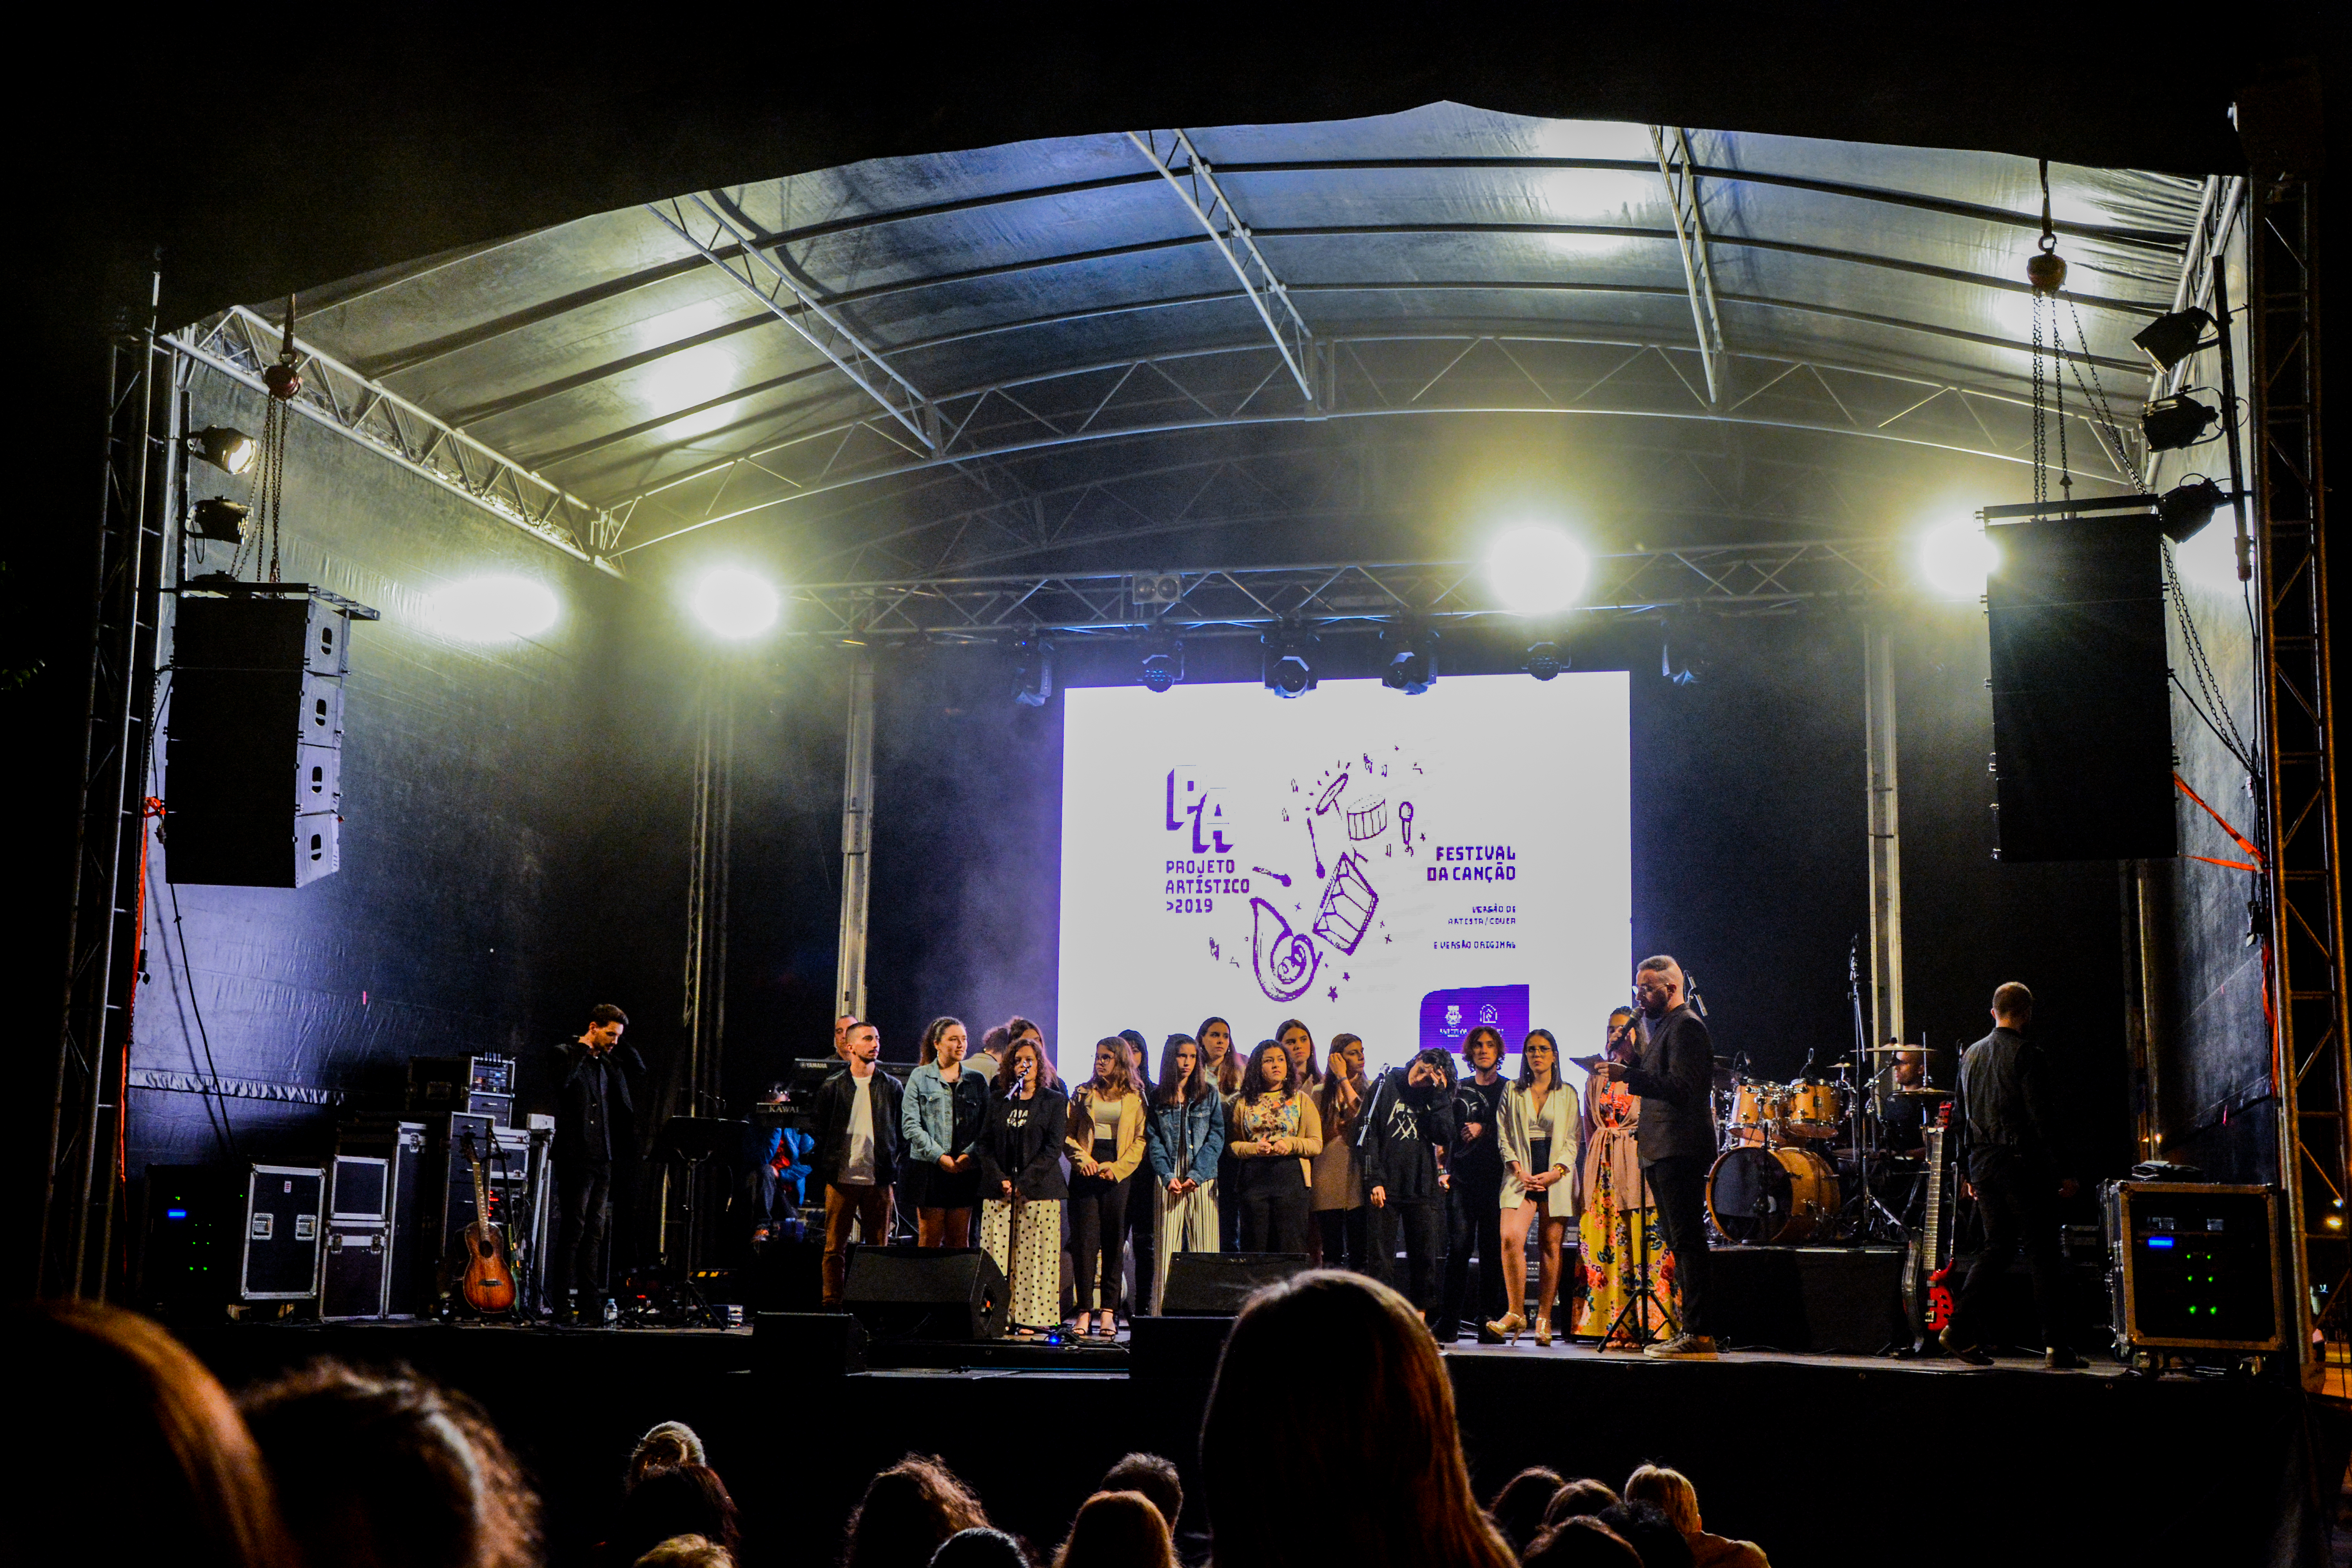 Sofia Silva e Ângela Pontes venceram Festival da Canção